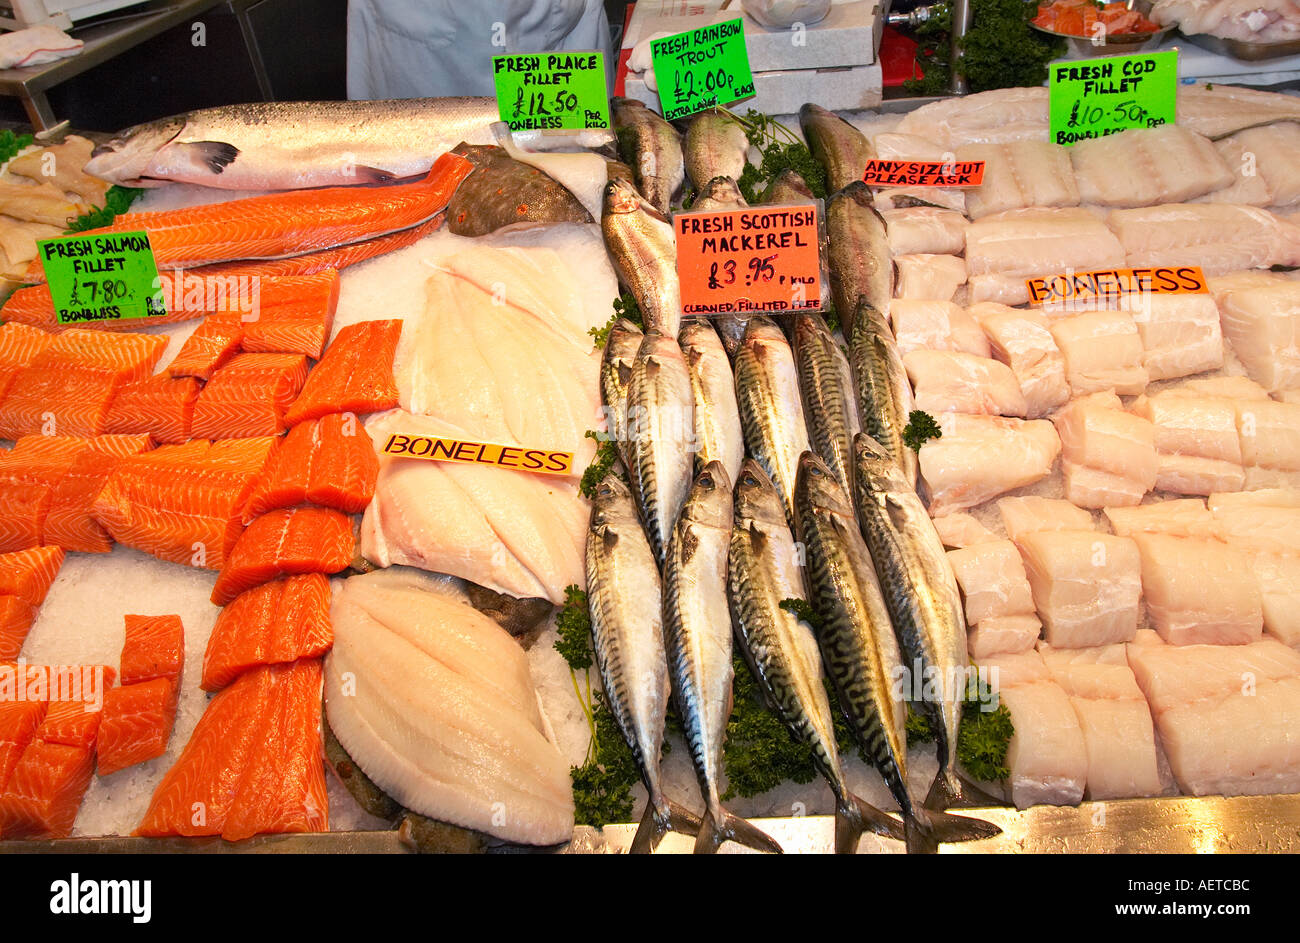 Market stall selling fresh fish England UK Stock Photo